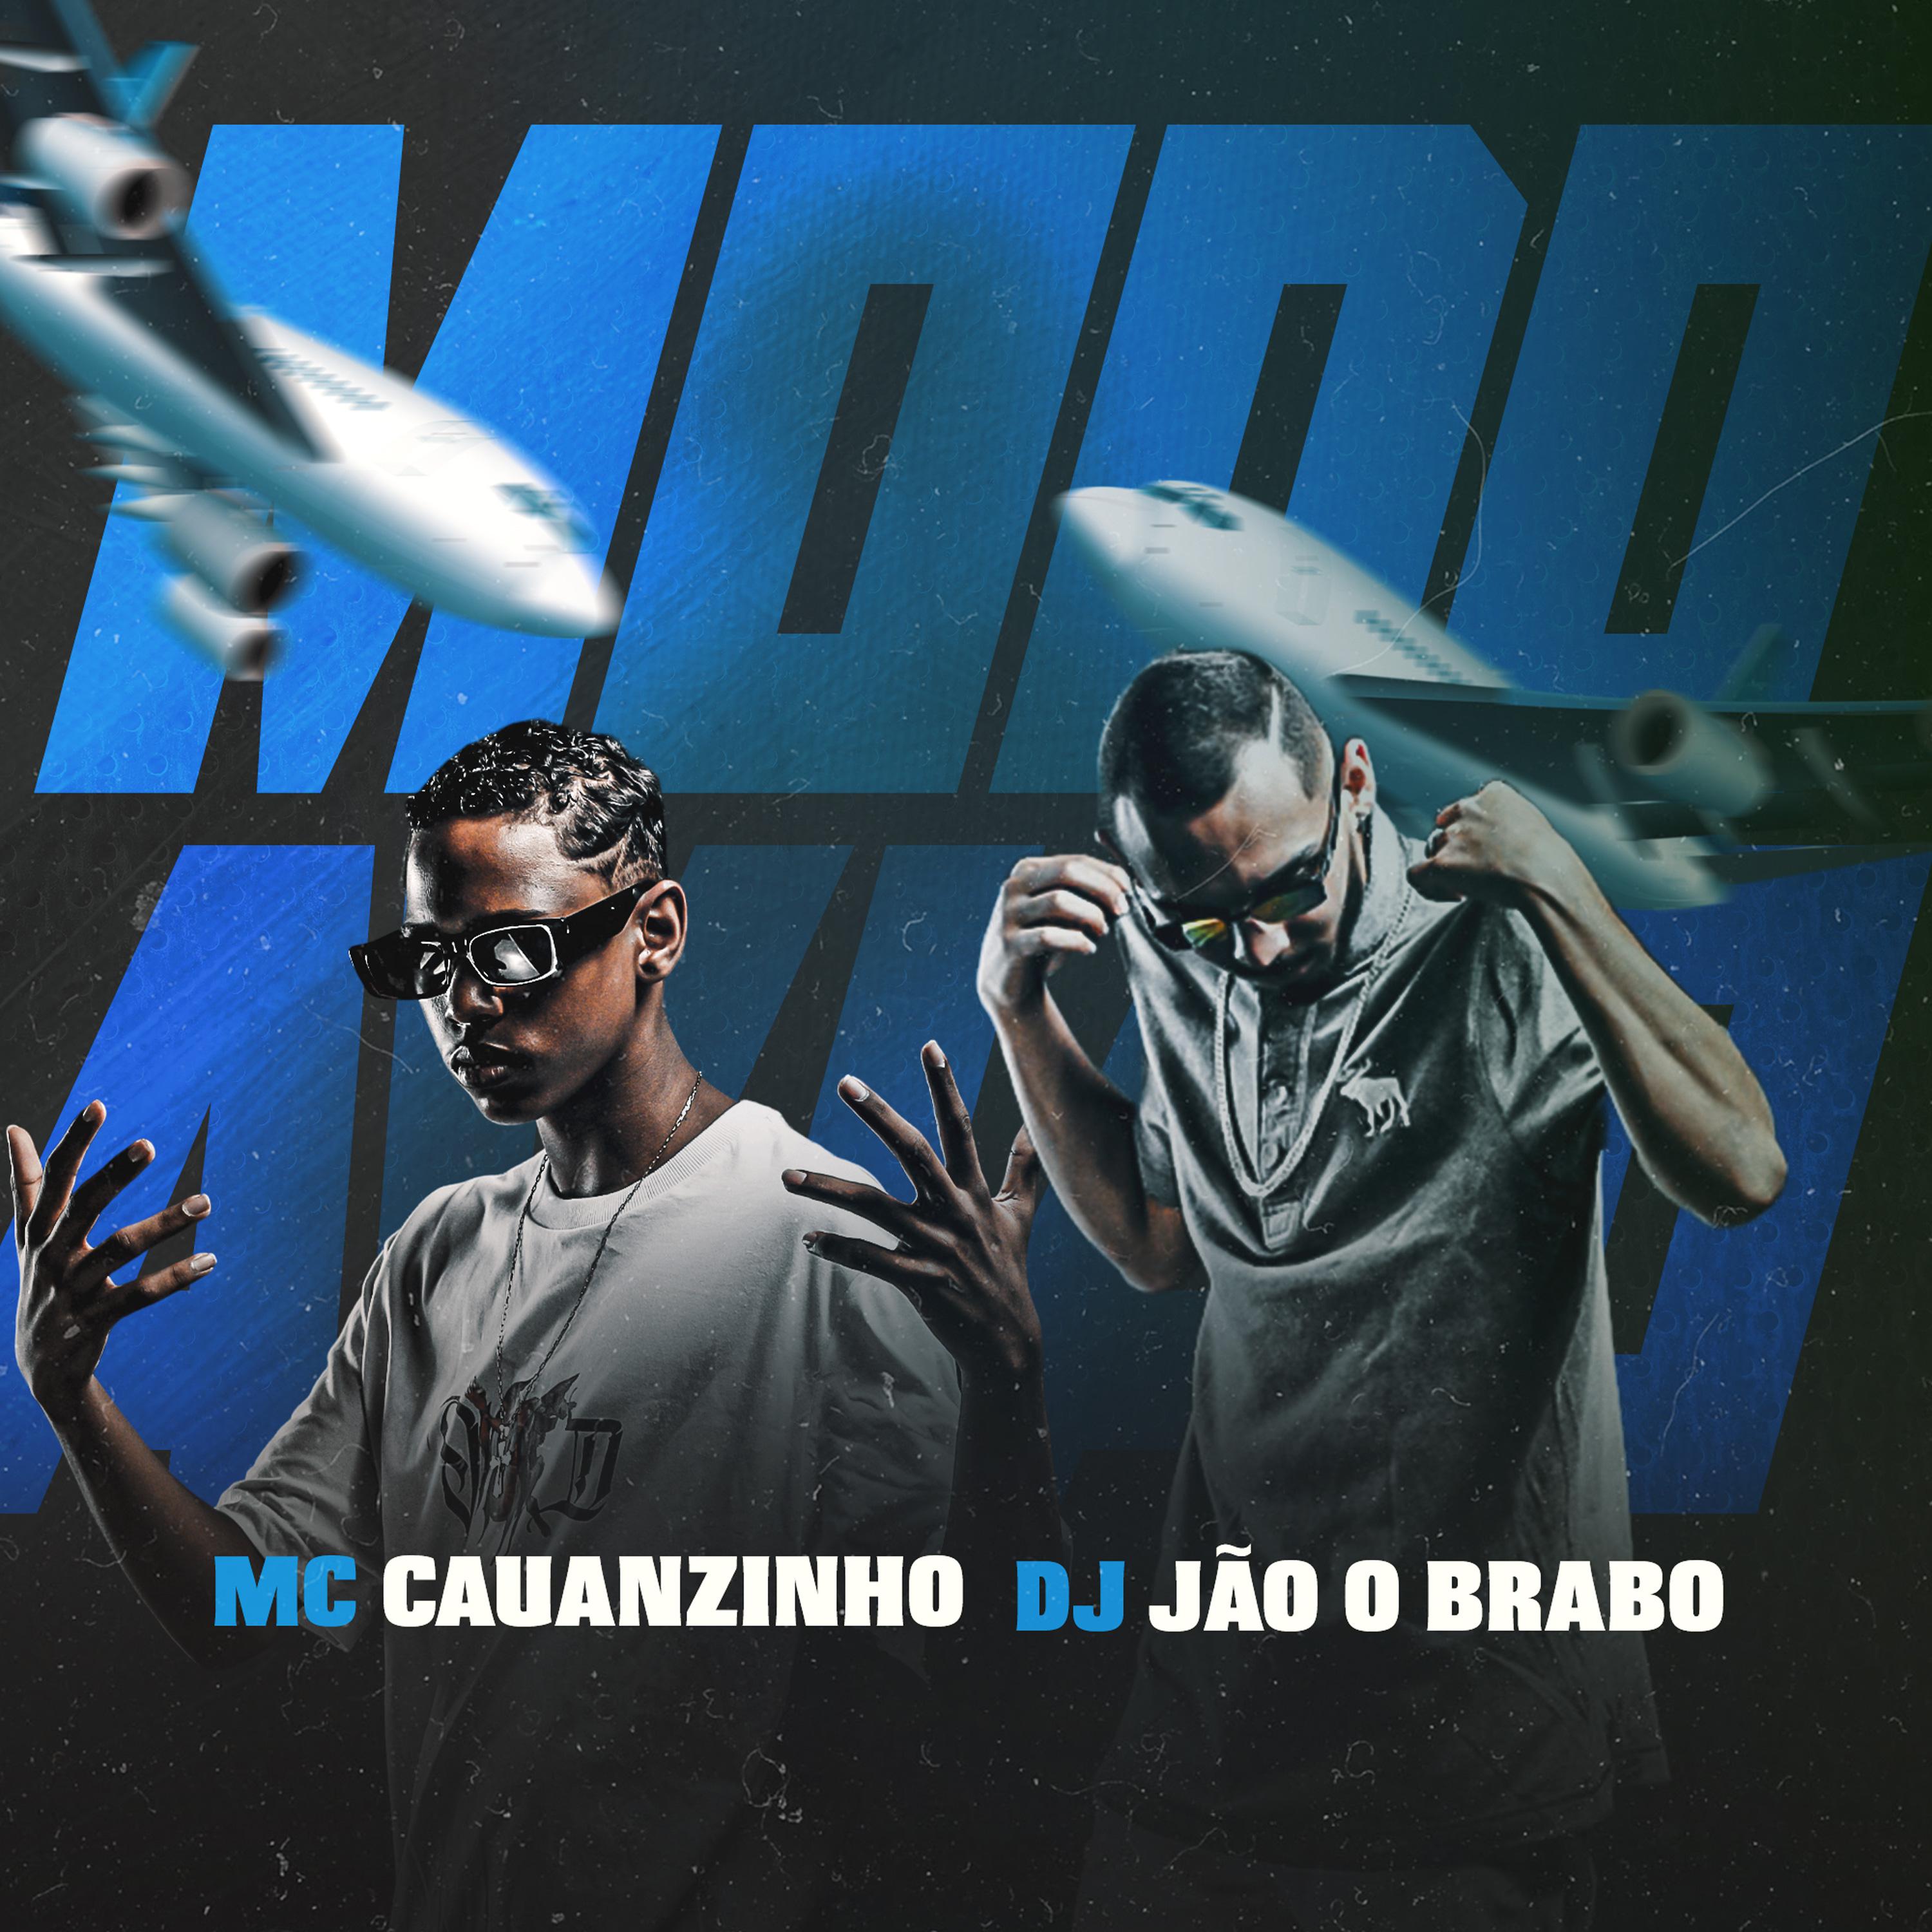 Постер альбома Modo Avião